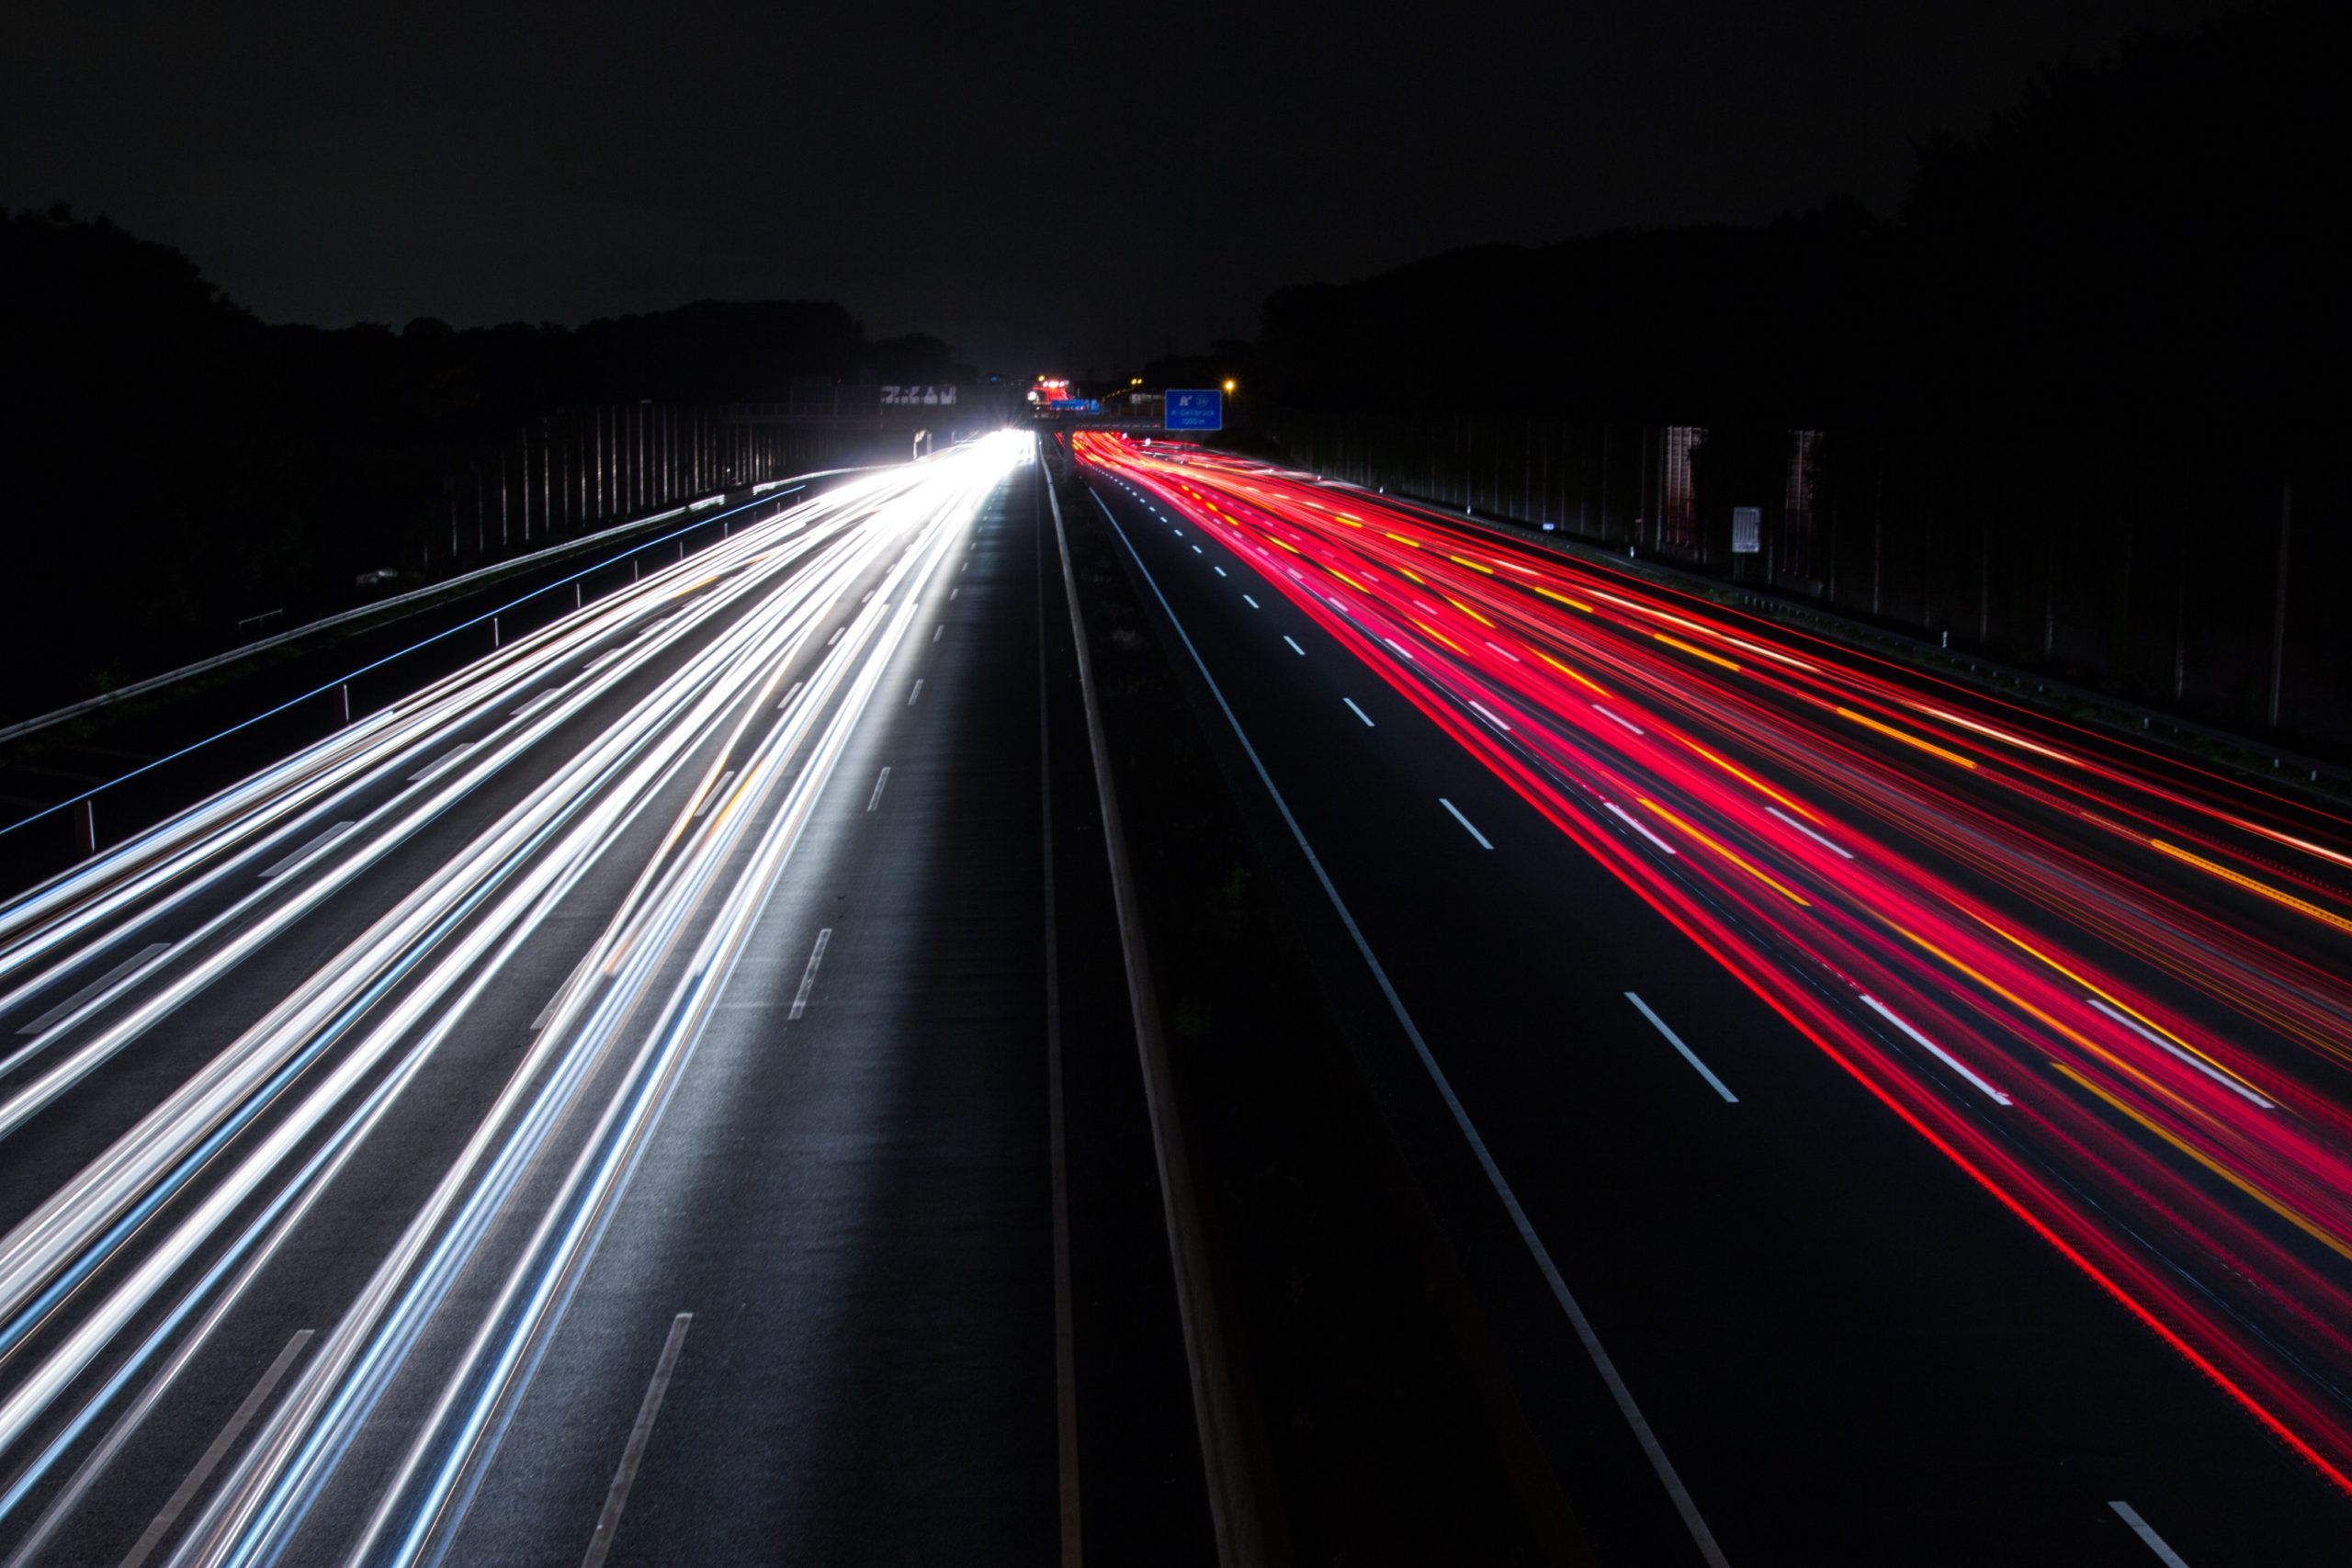 Richtgeschwindigkeit: 130 km/h auf Autobahnen empfohlen